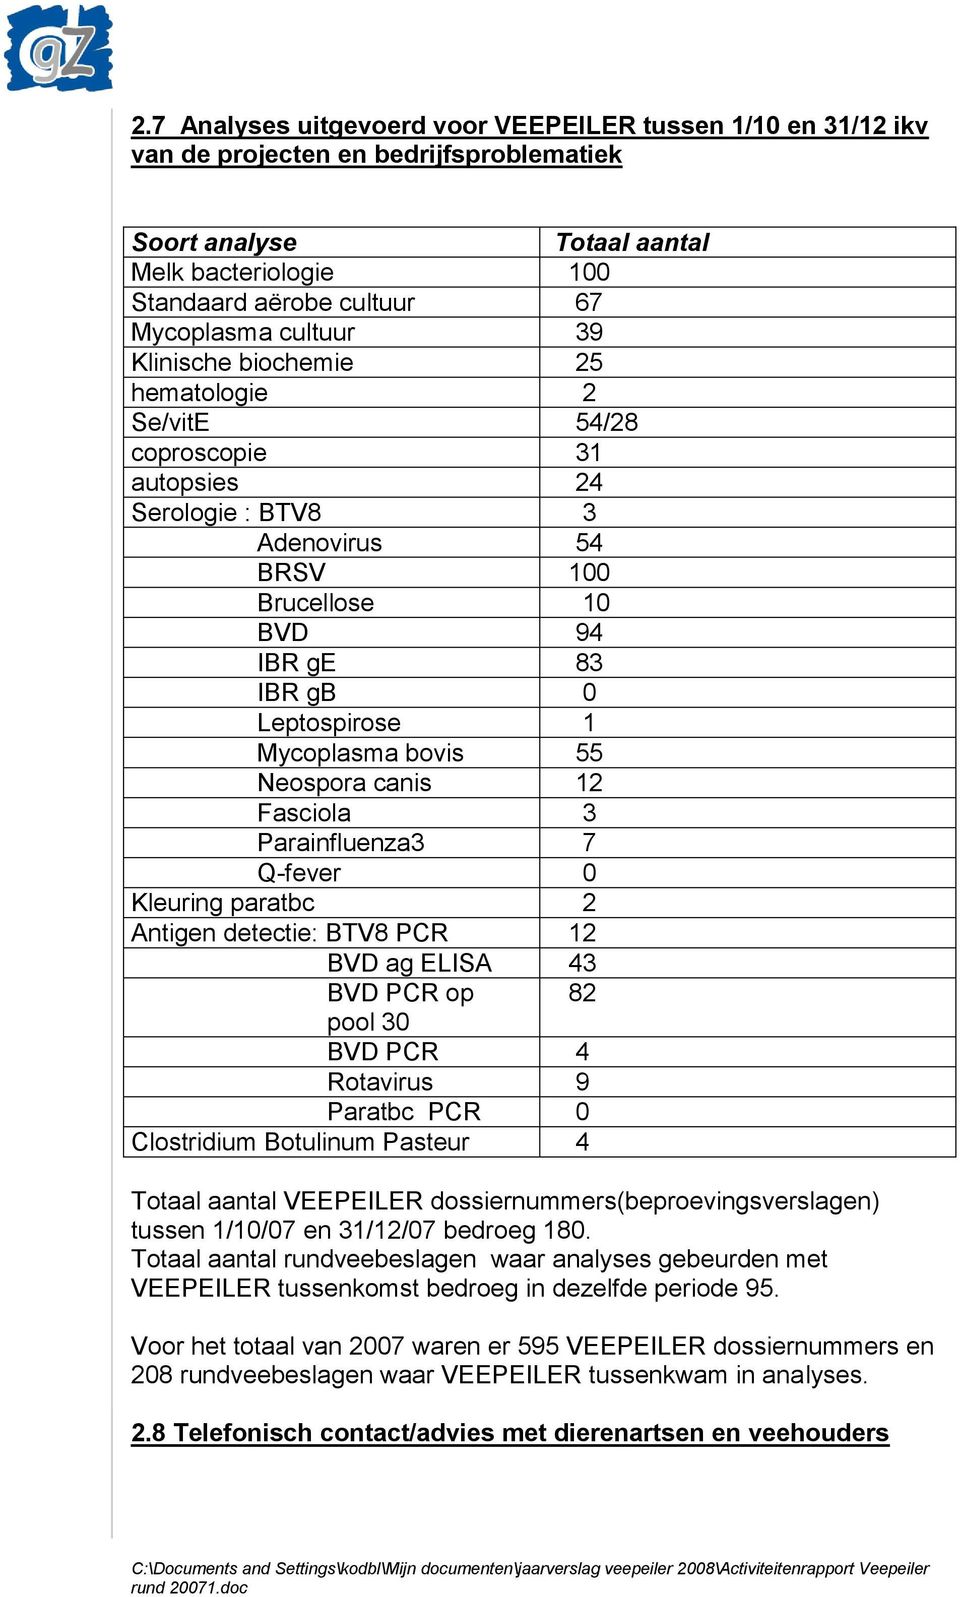 bovis 55 Neospora canis 12 Fasciola 3 Parainfluenza3 7 Q-fever 0 Kleuring paratbc 2 Antigen detectie: BTV8 PCR 12 BVD ag ELISA 43 BVD PCR op 82 pool 30 BVD PCR 4 Rotavirus 9 Paratbc PCR 0 Clostridium